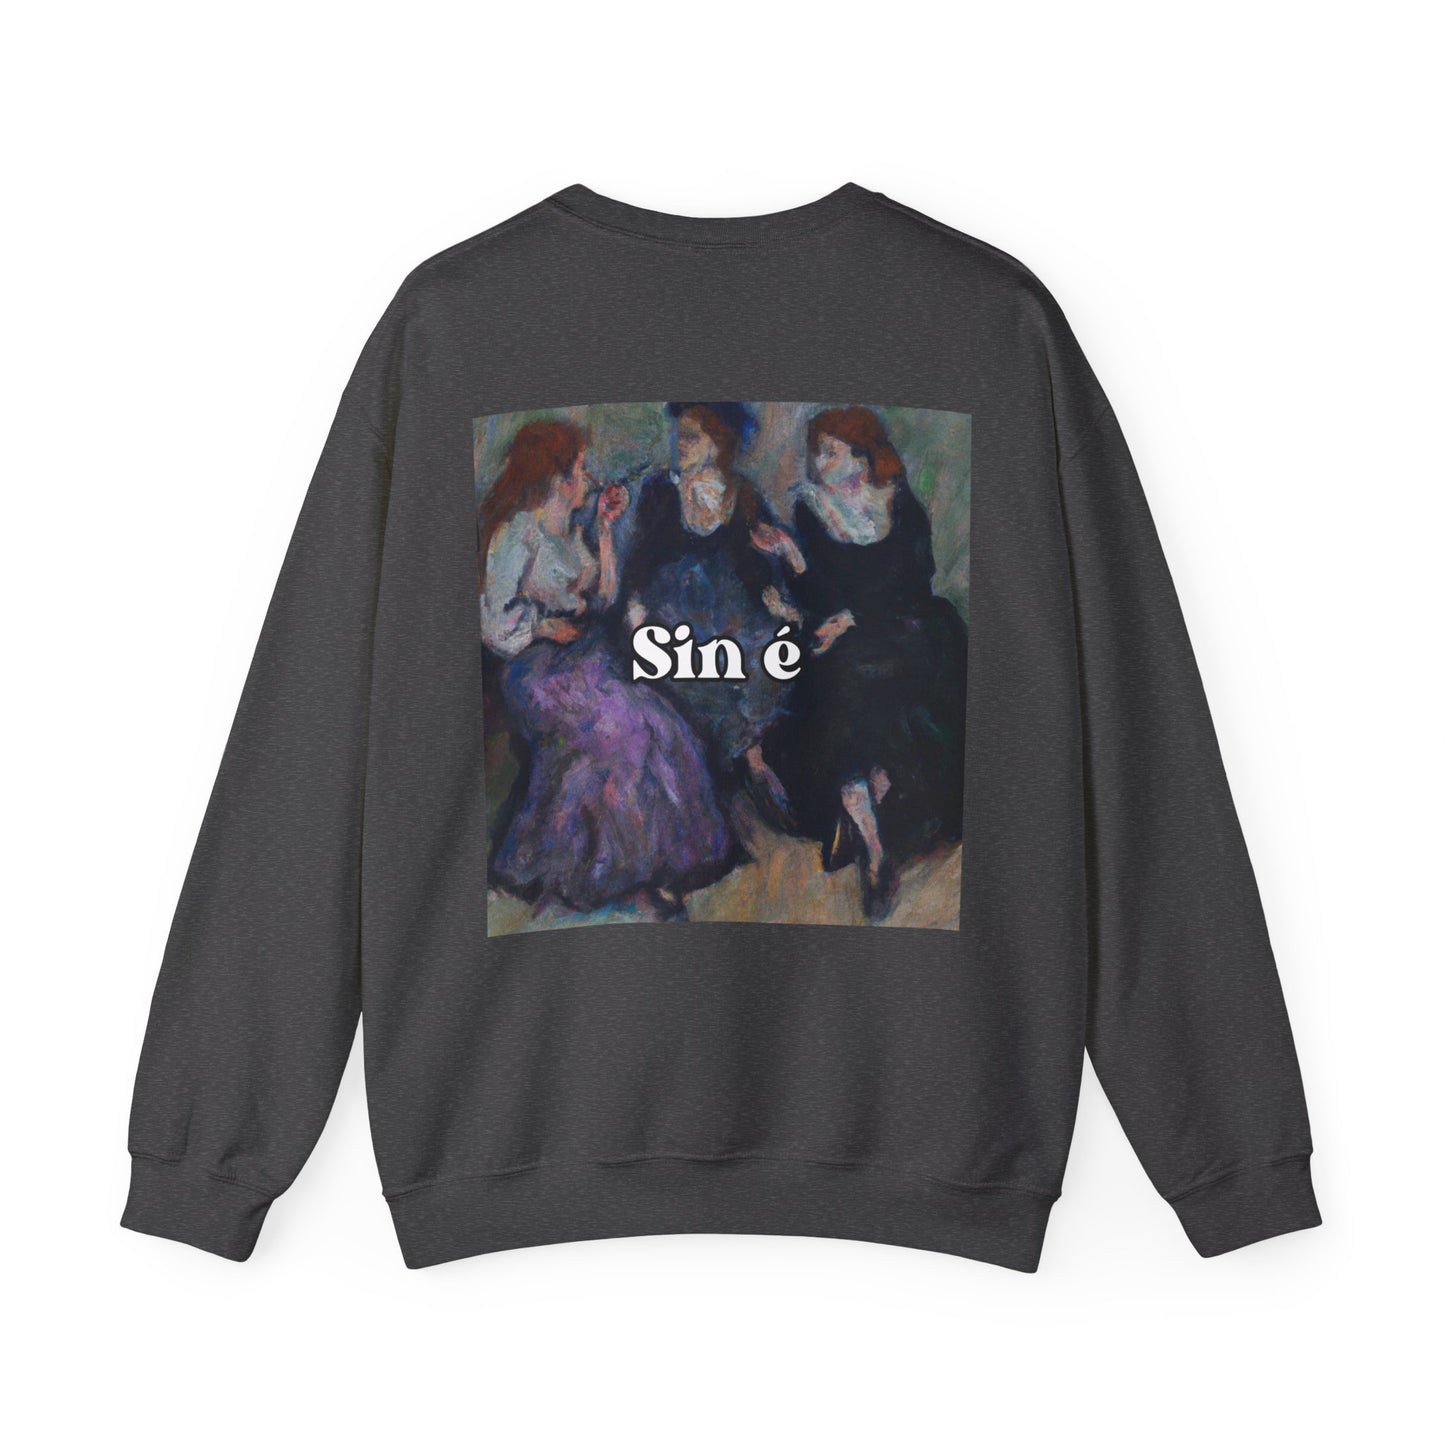 Sin é - sweatshirt x Sarah Words Collection